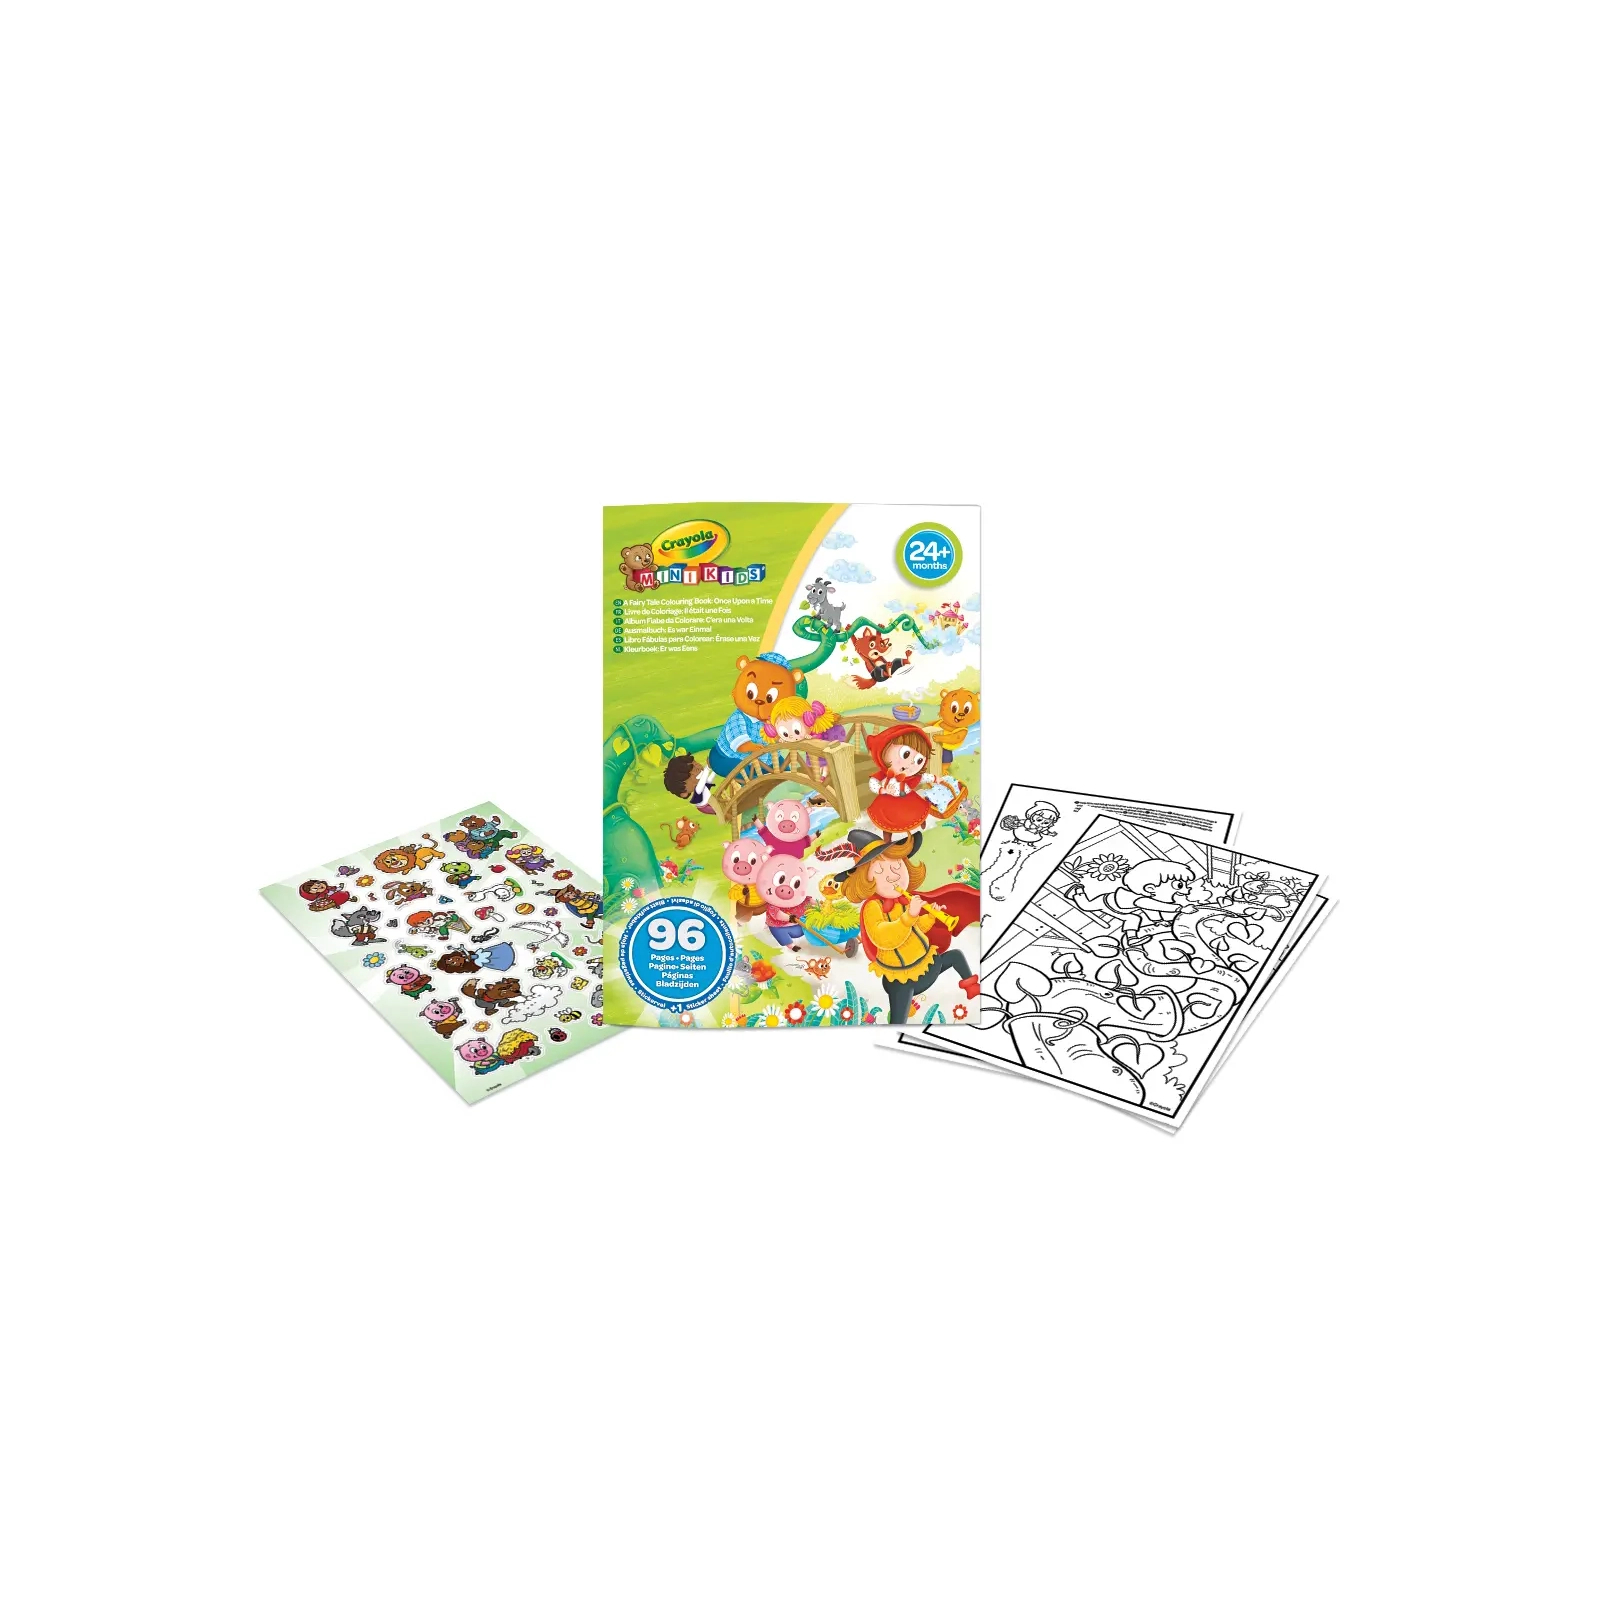 Набор для творчества Crayola Mini Kids Раскраска Любимые сказки, 96 страниц и дополнительно наклейки (25-1081)